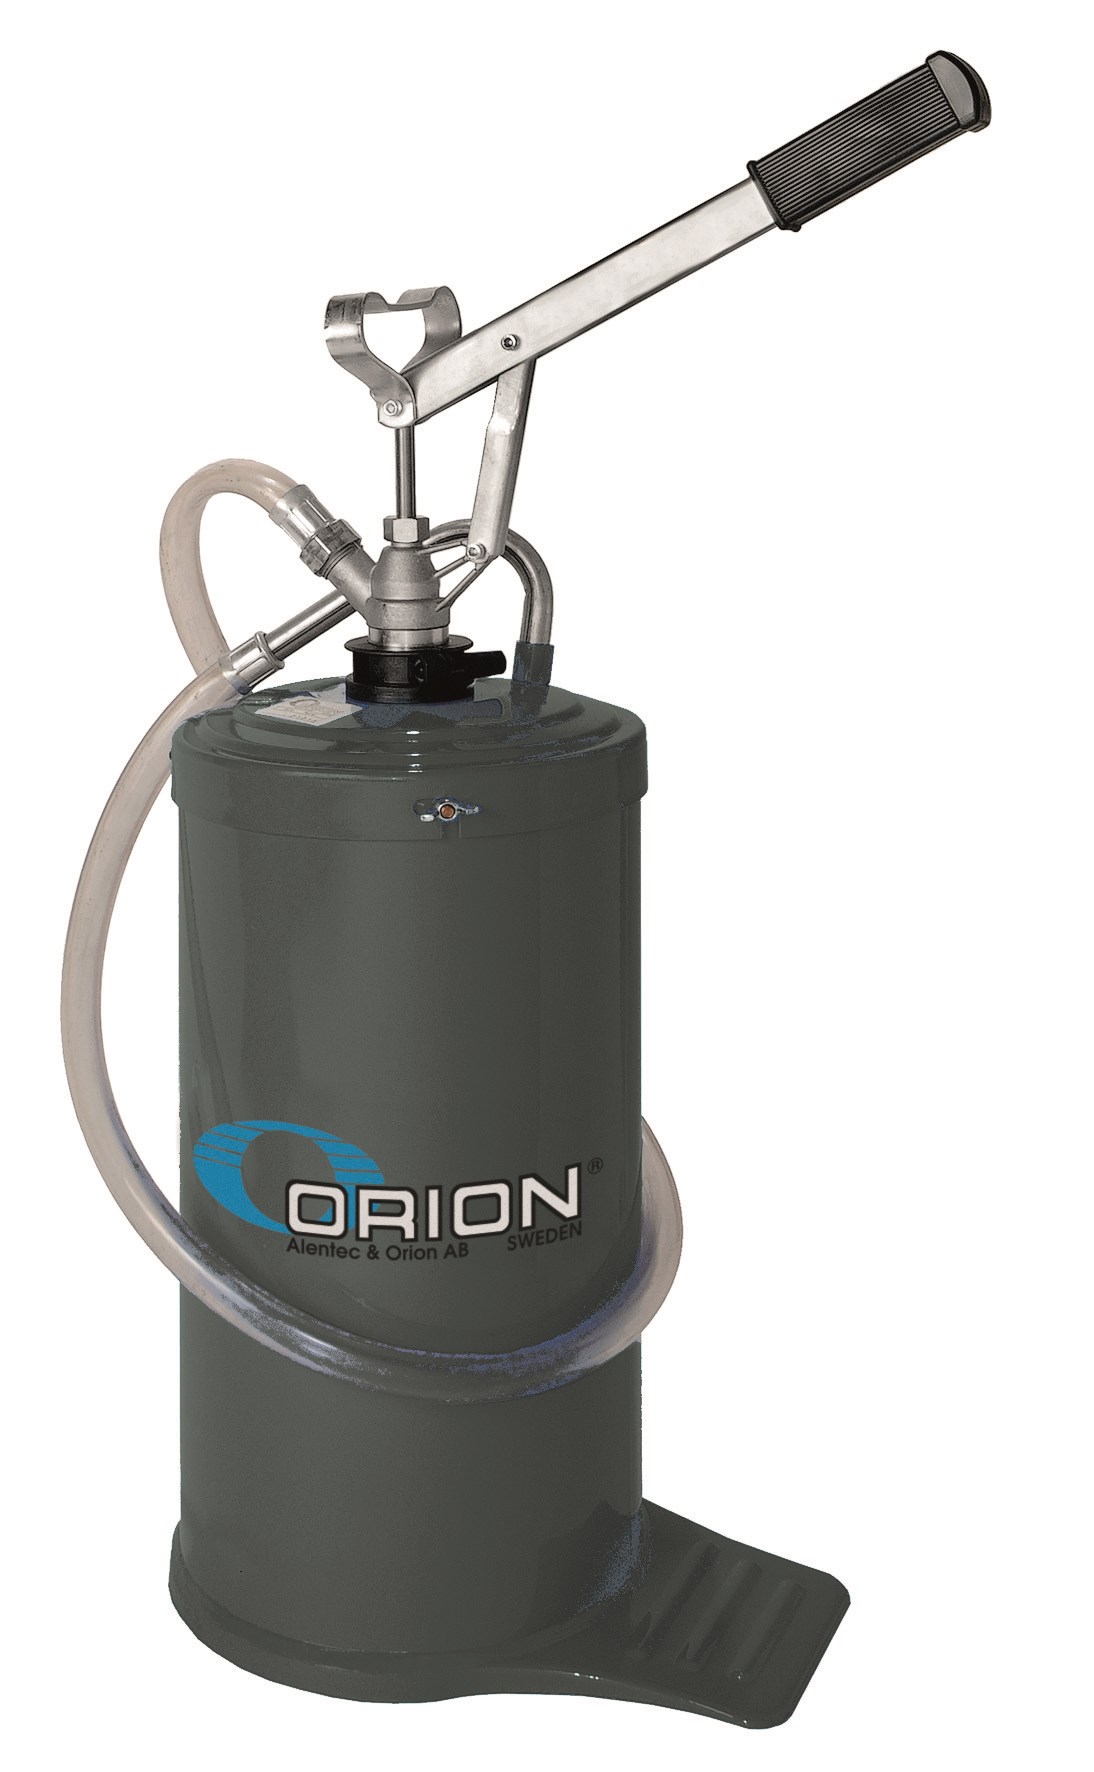 Portable oil dispenser 16L - Alentec & Orion AB